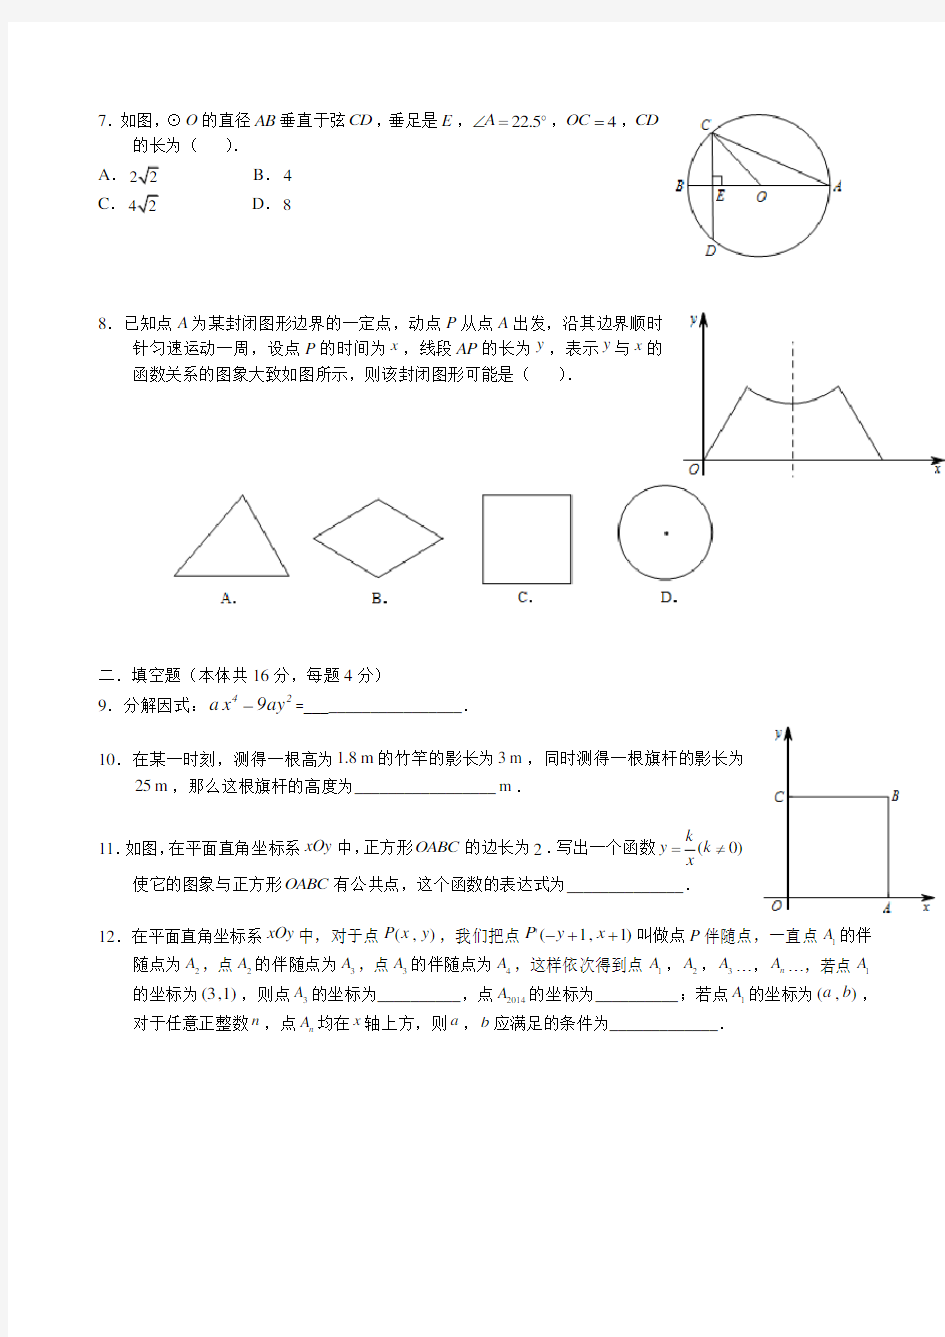 2014年北京中考数学试题及答案